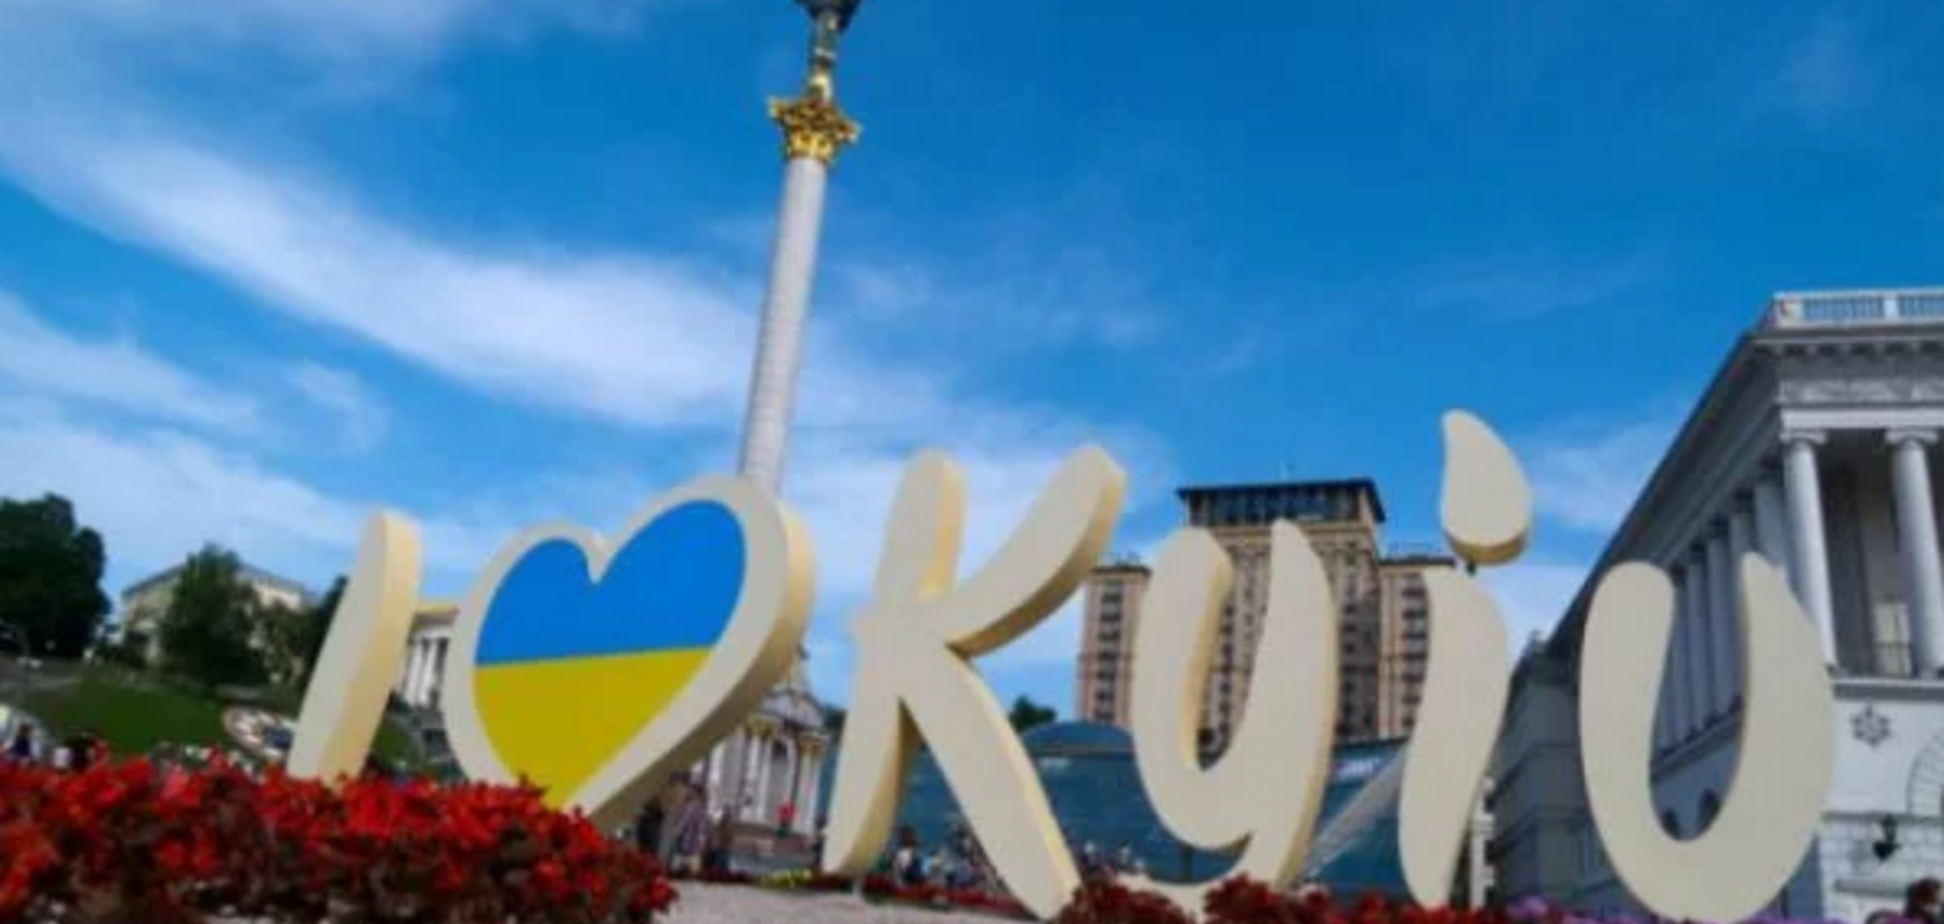 Больше не Kiev: Евросоюз стал по-новому писать название столицы 